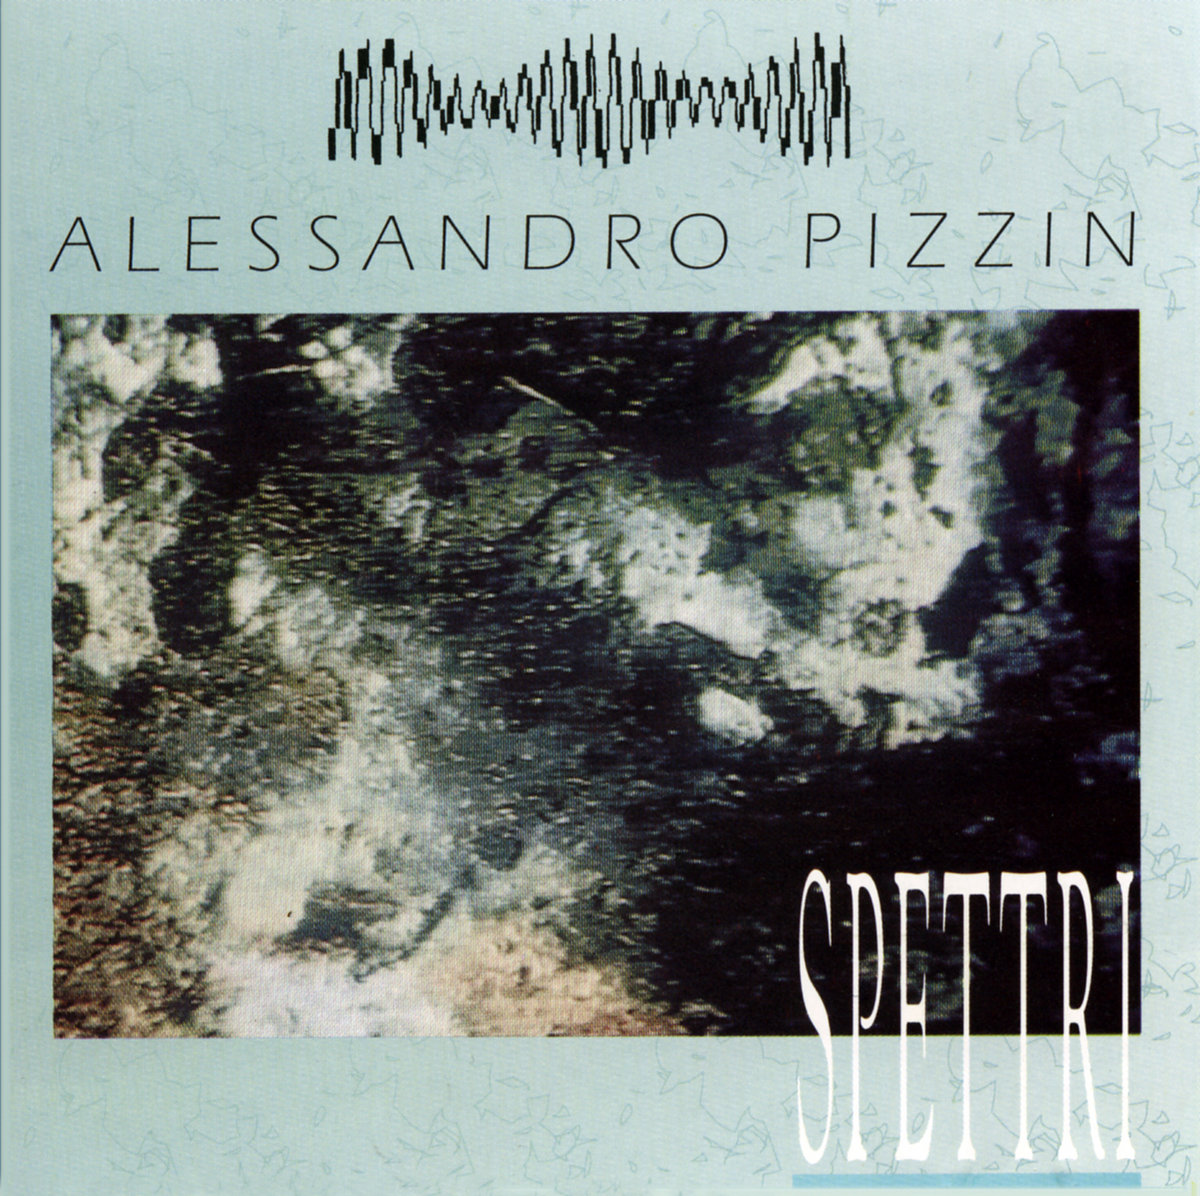 Alessandro Pizzin — Spettri